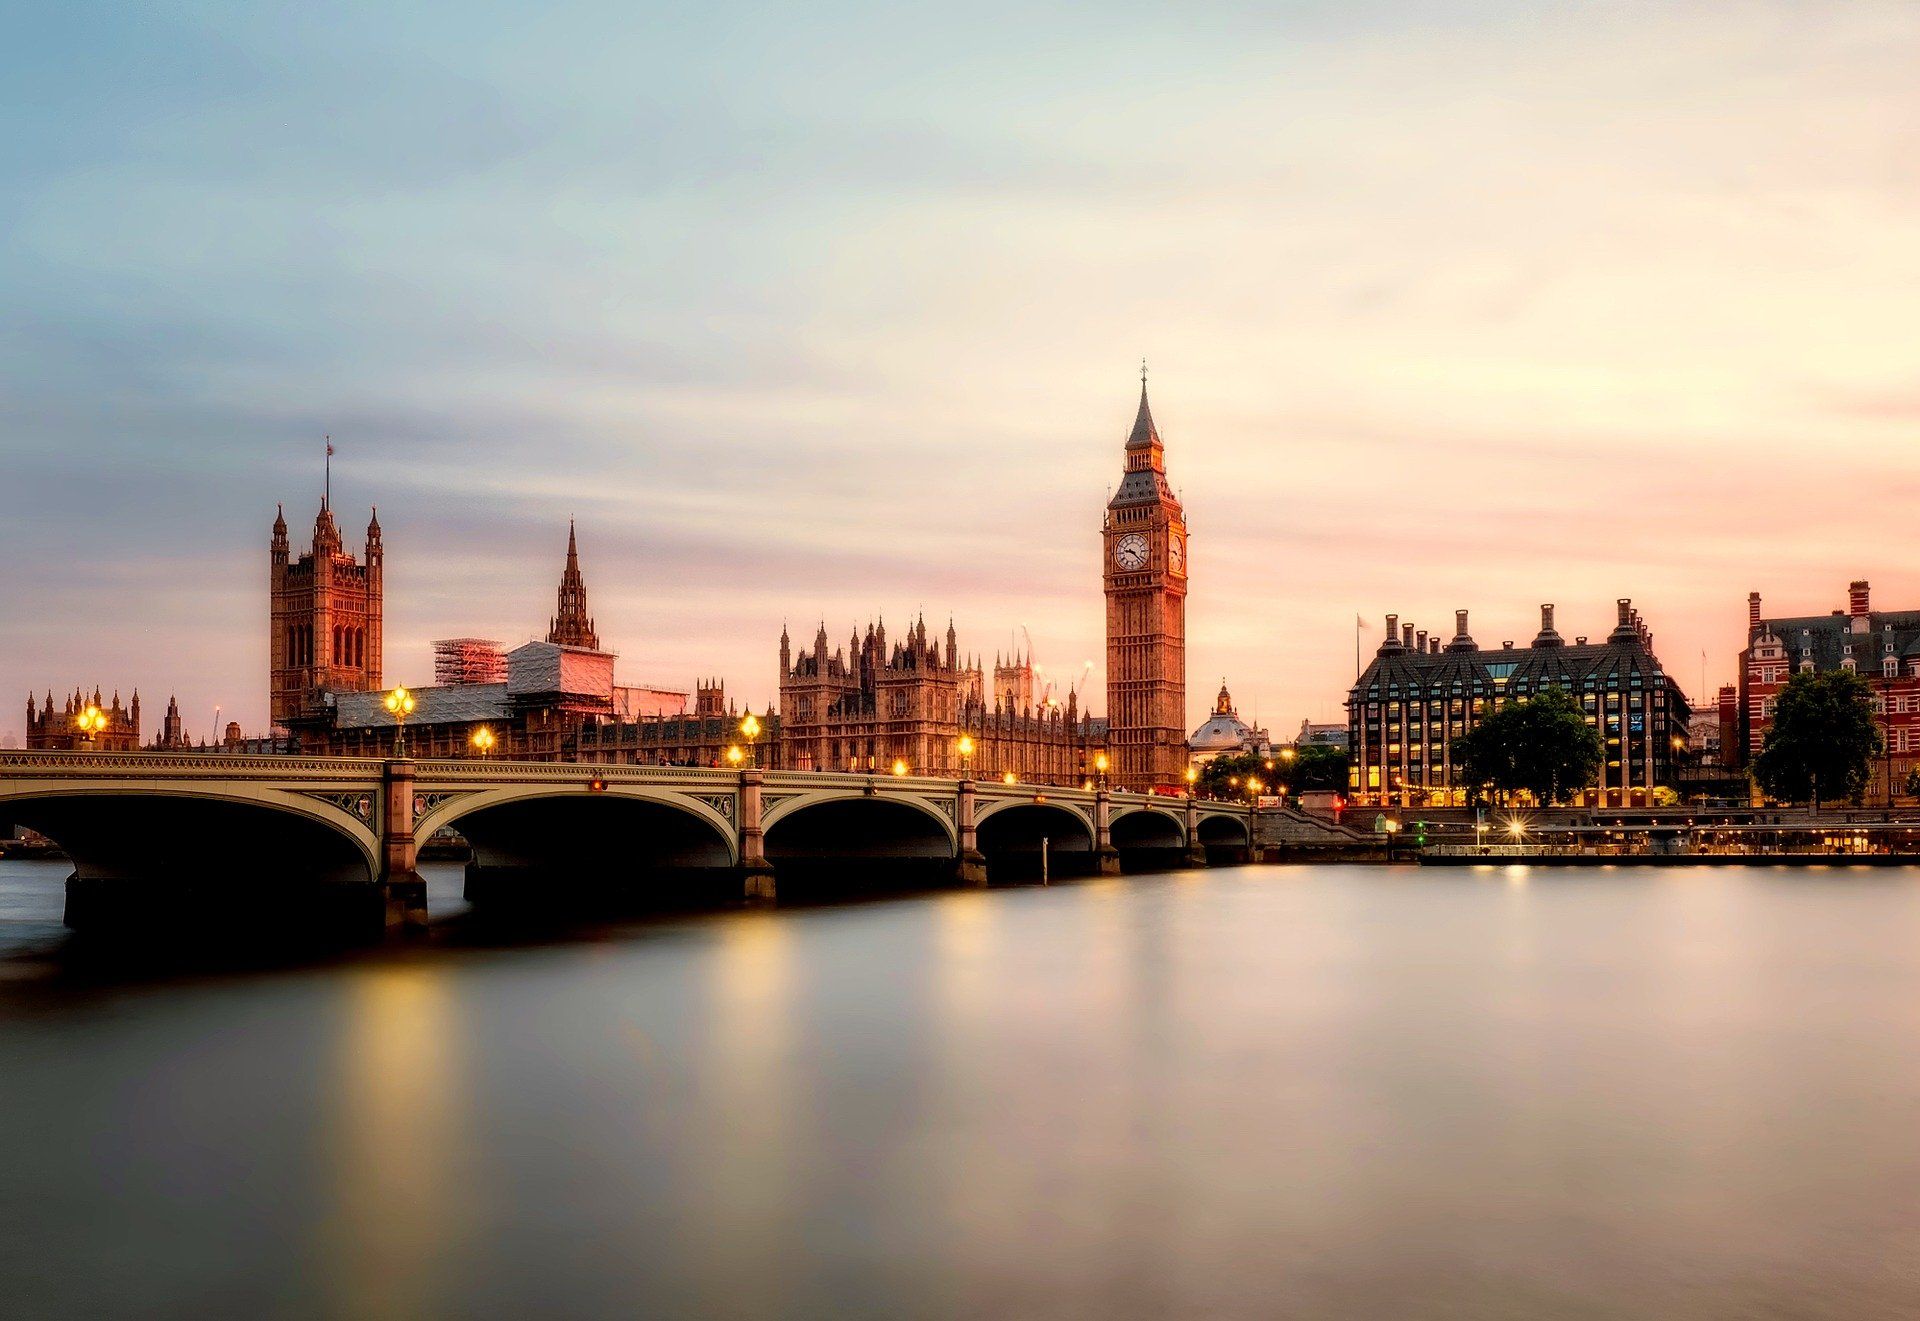 Voyage d'entreprise: Londres à 360°